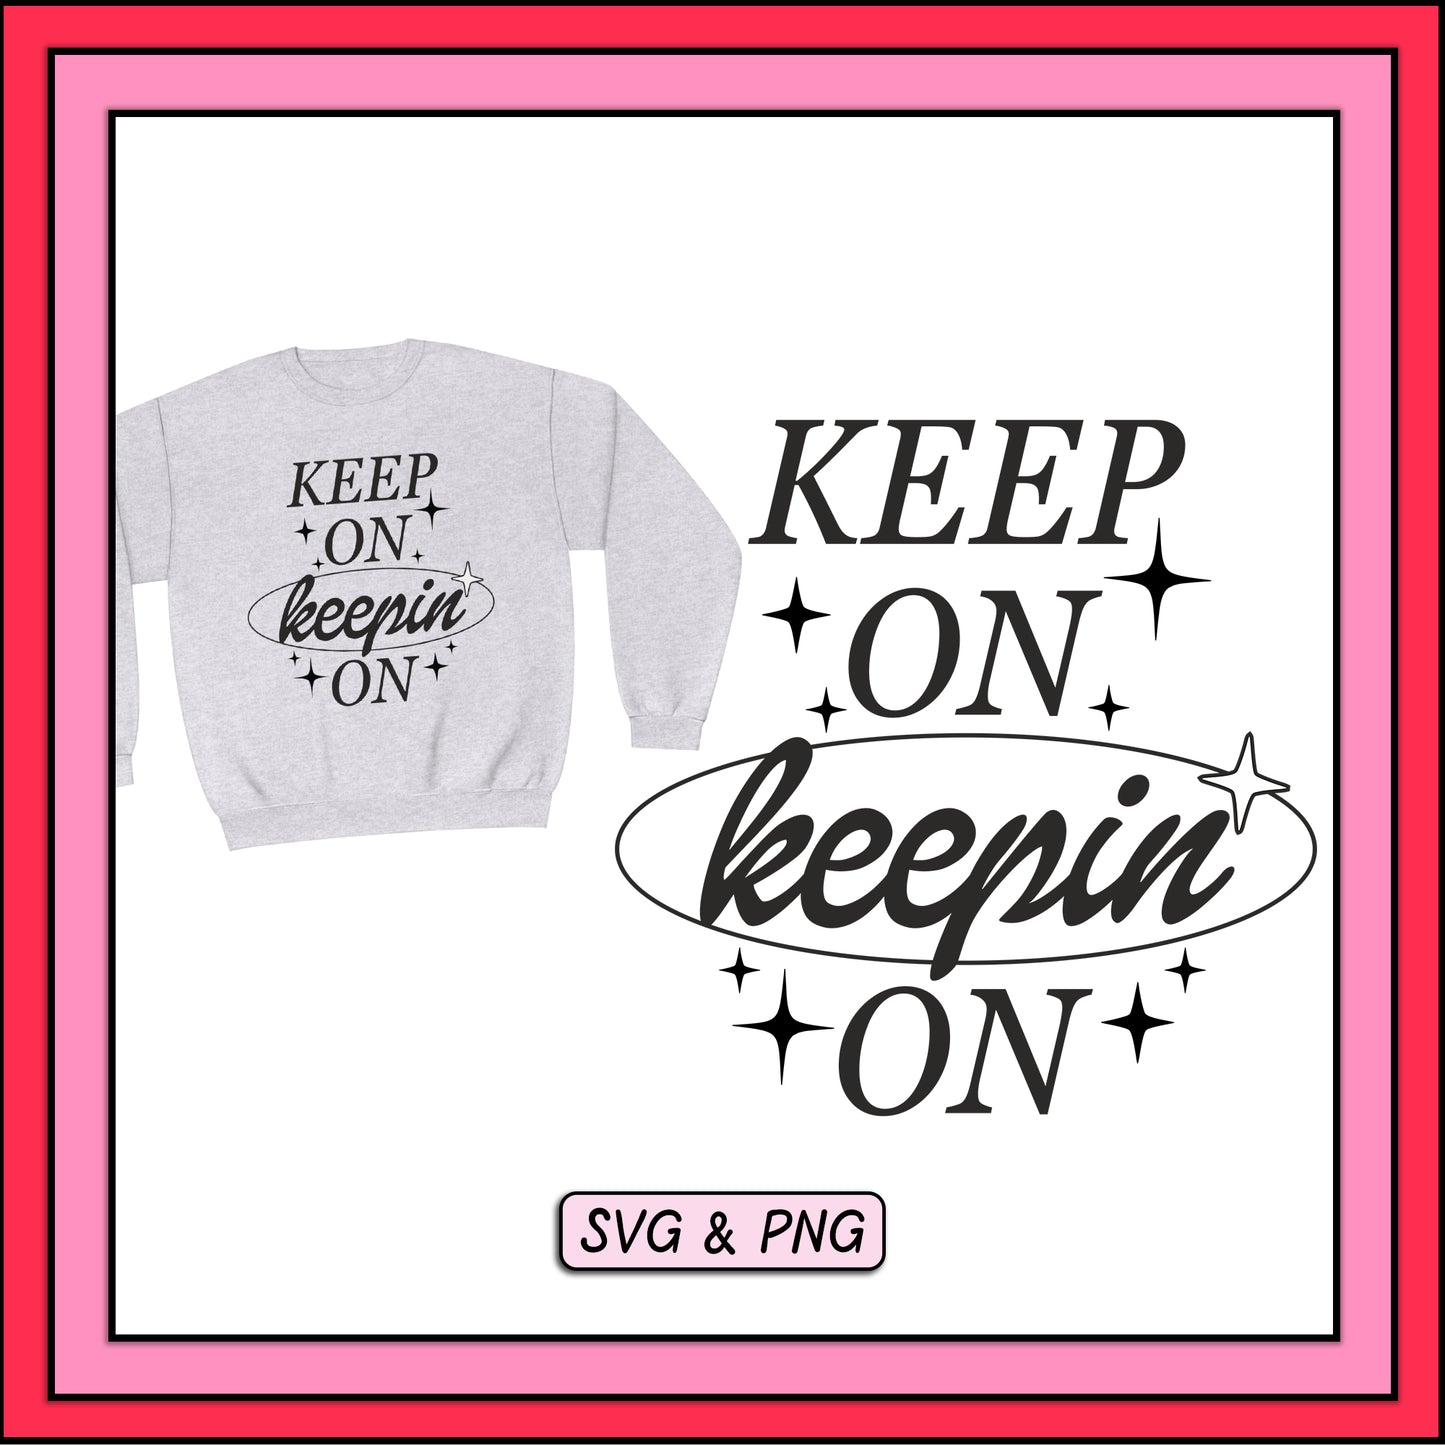 Keep On Keepin On - SVG & PNG Design File